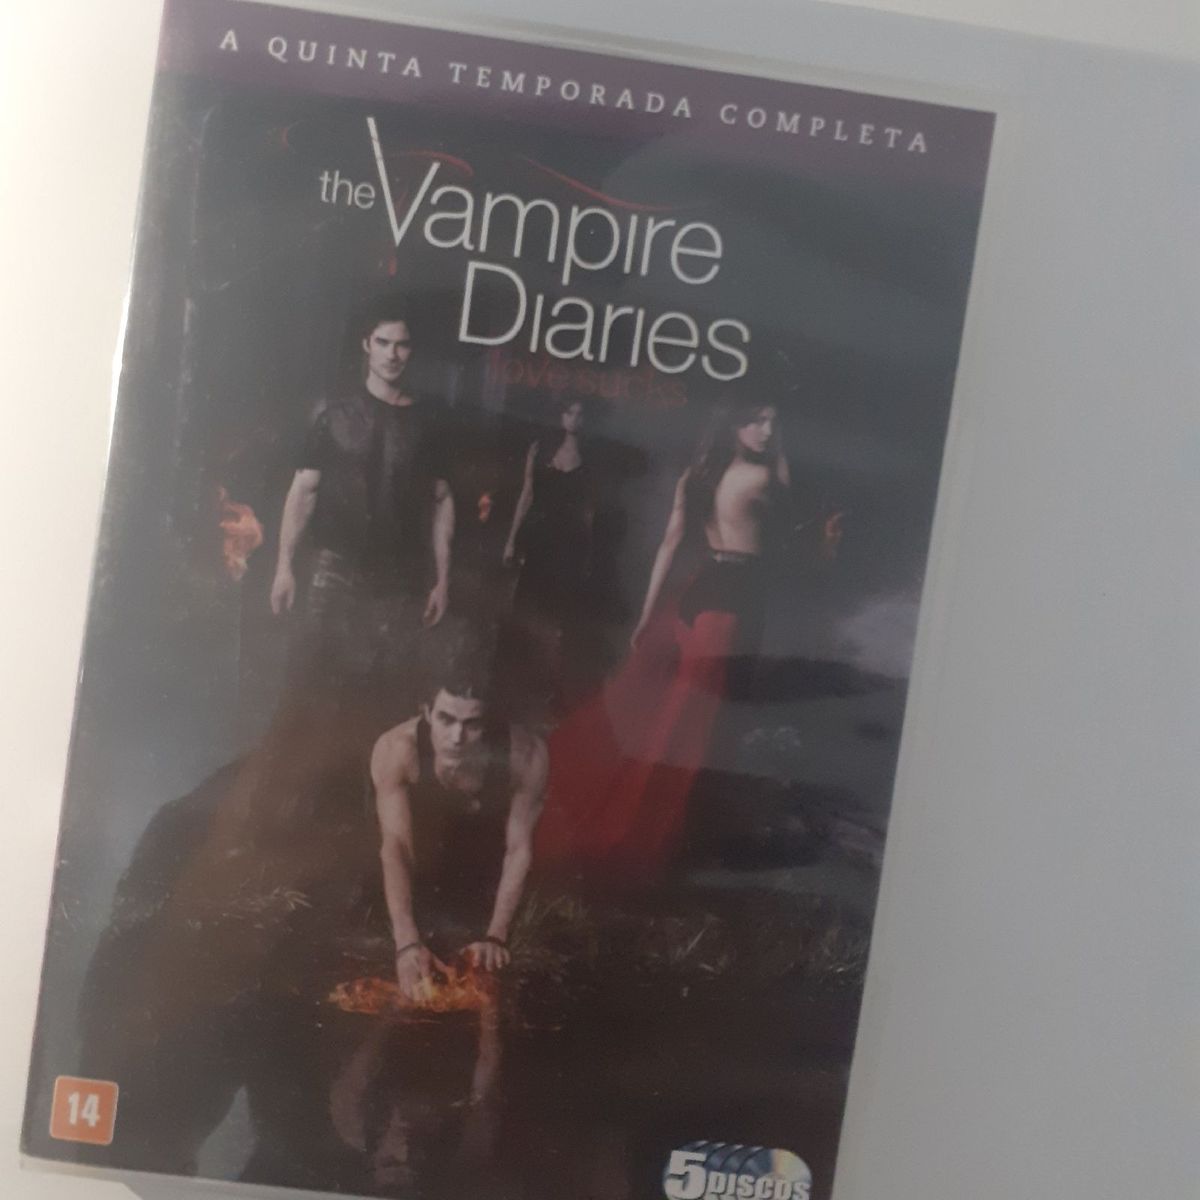 Dvd Diários de um vampiro + Os originais